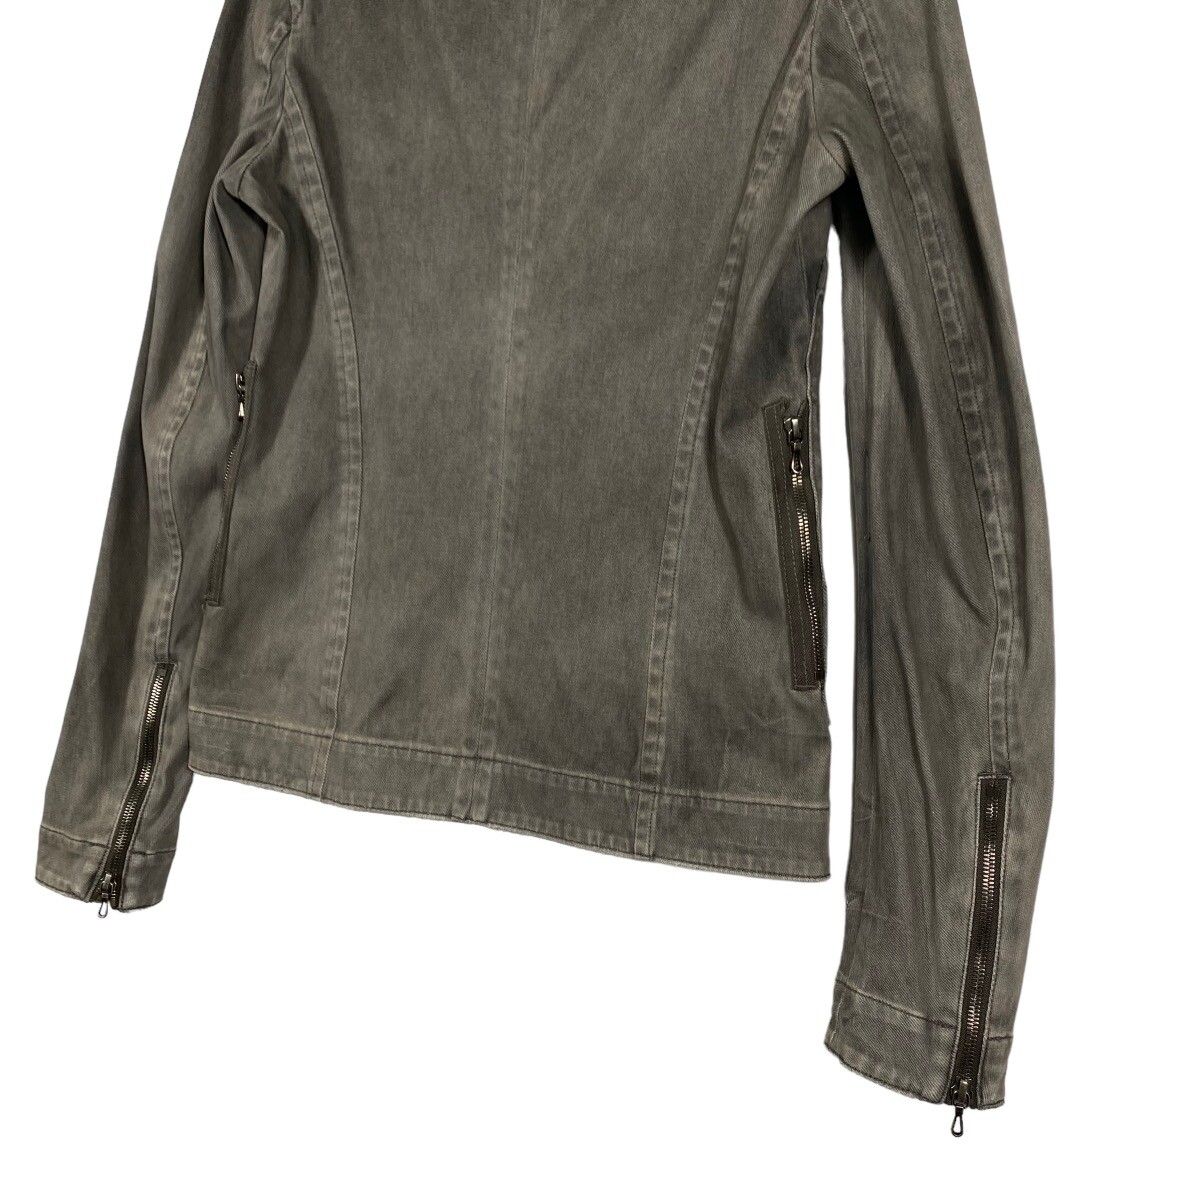 Julius Ss11 Knit Denim Jacket Size 1 (s) Grey Colour - 19